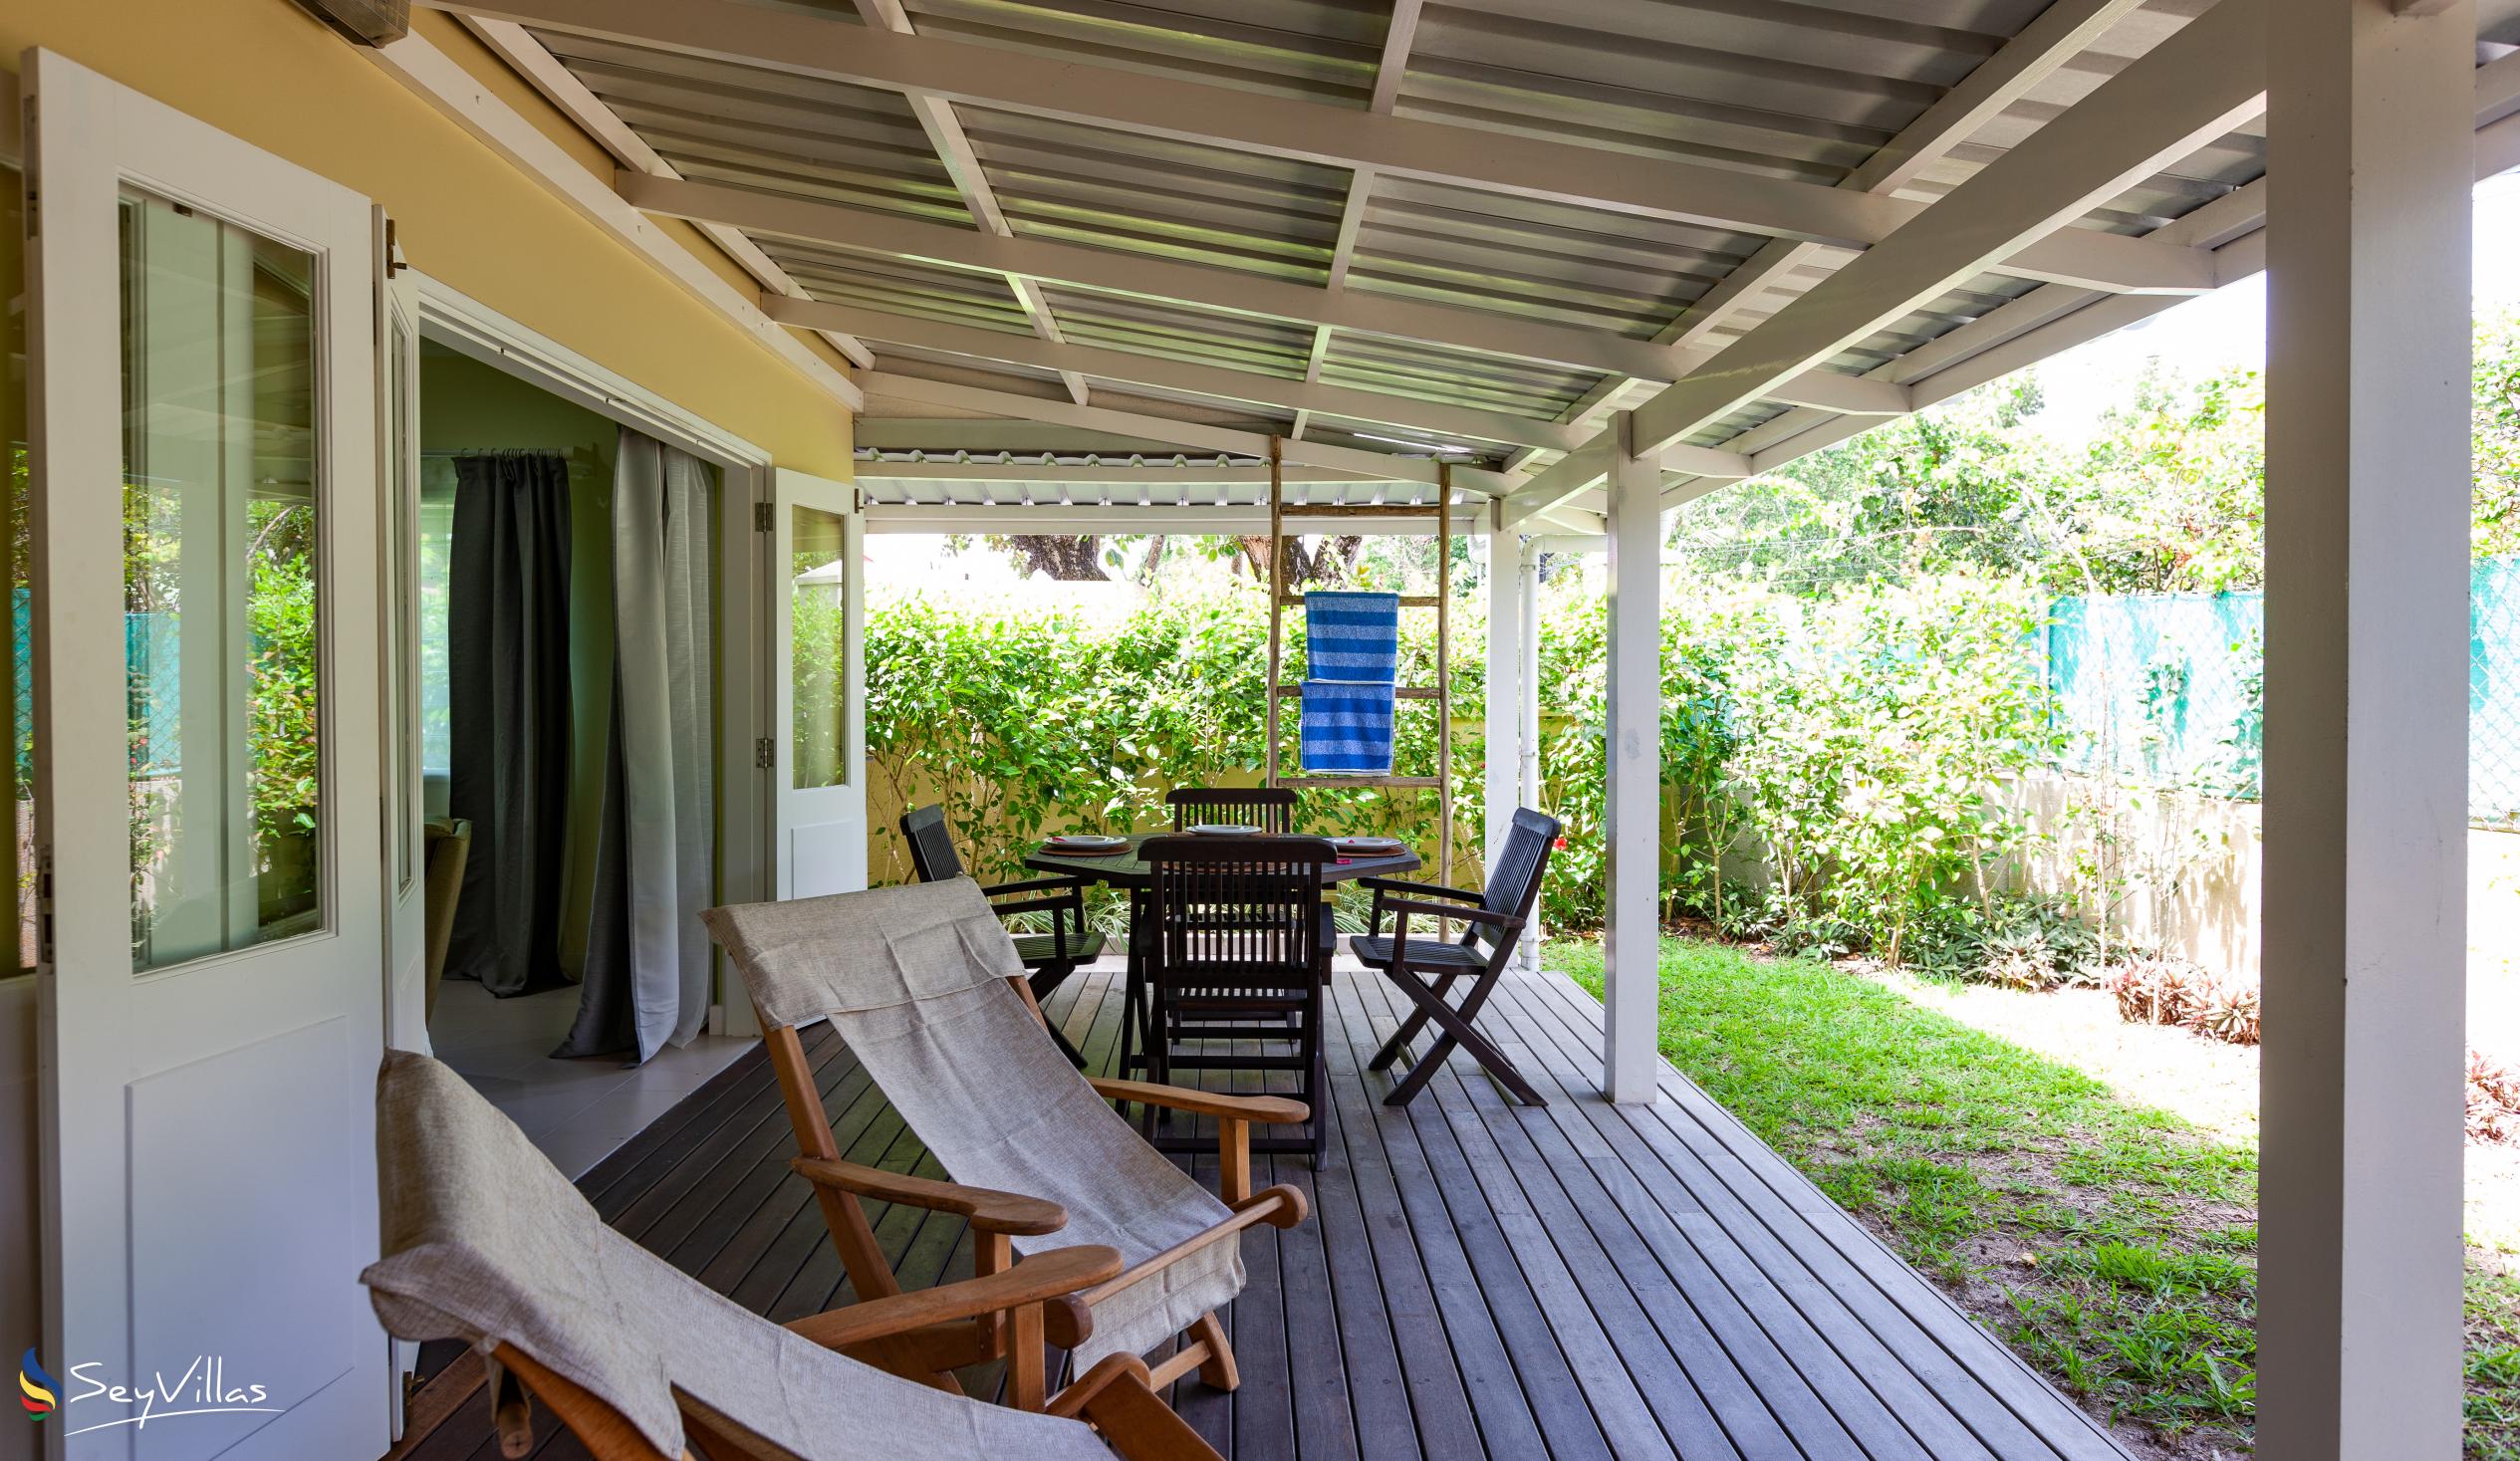 Foto 44: Residence Praslinoise - Familienappartement mit 2 Schlafzimmern (EG) - Praslin (Seychellen)